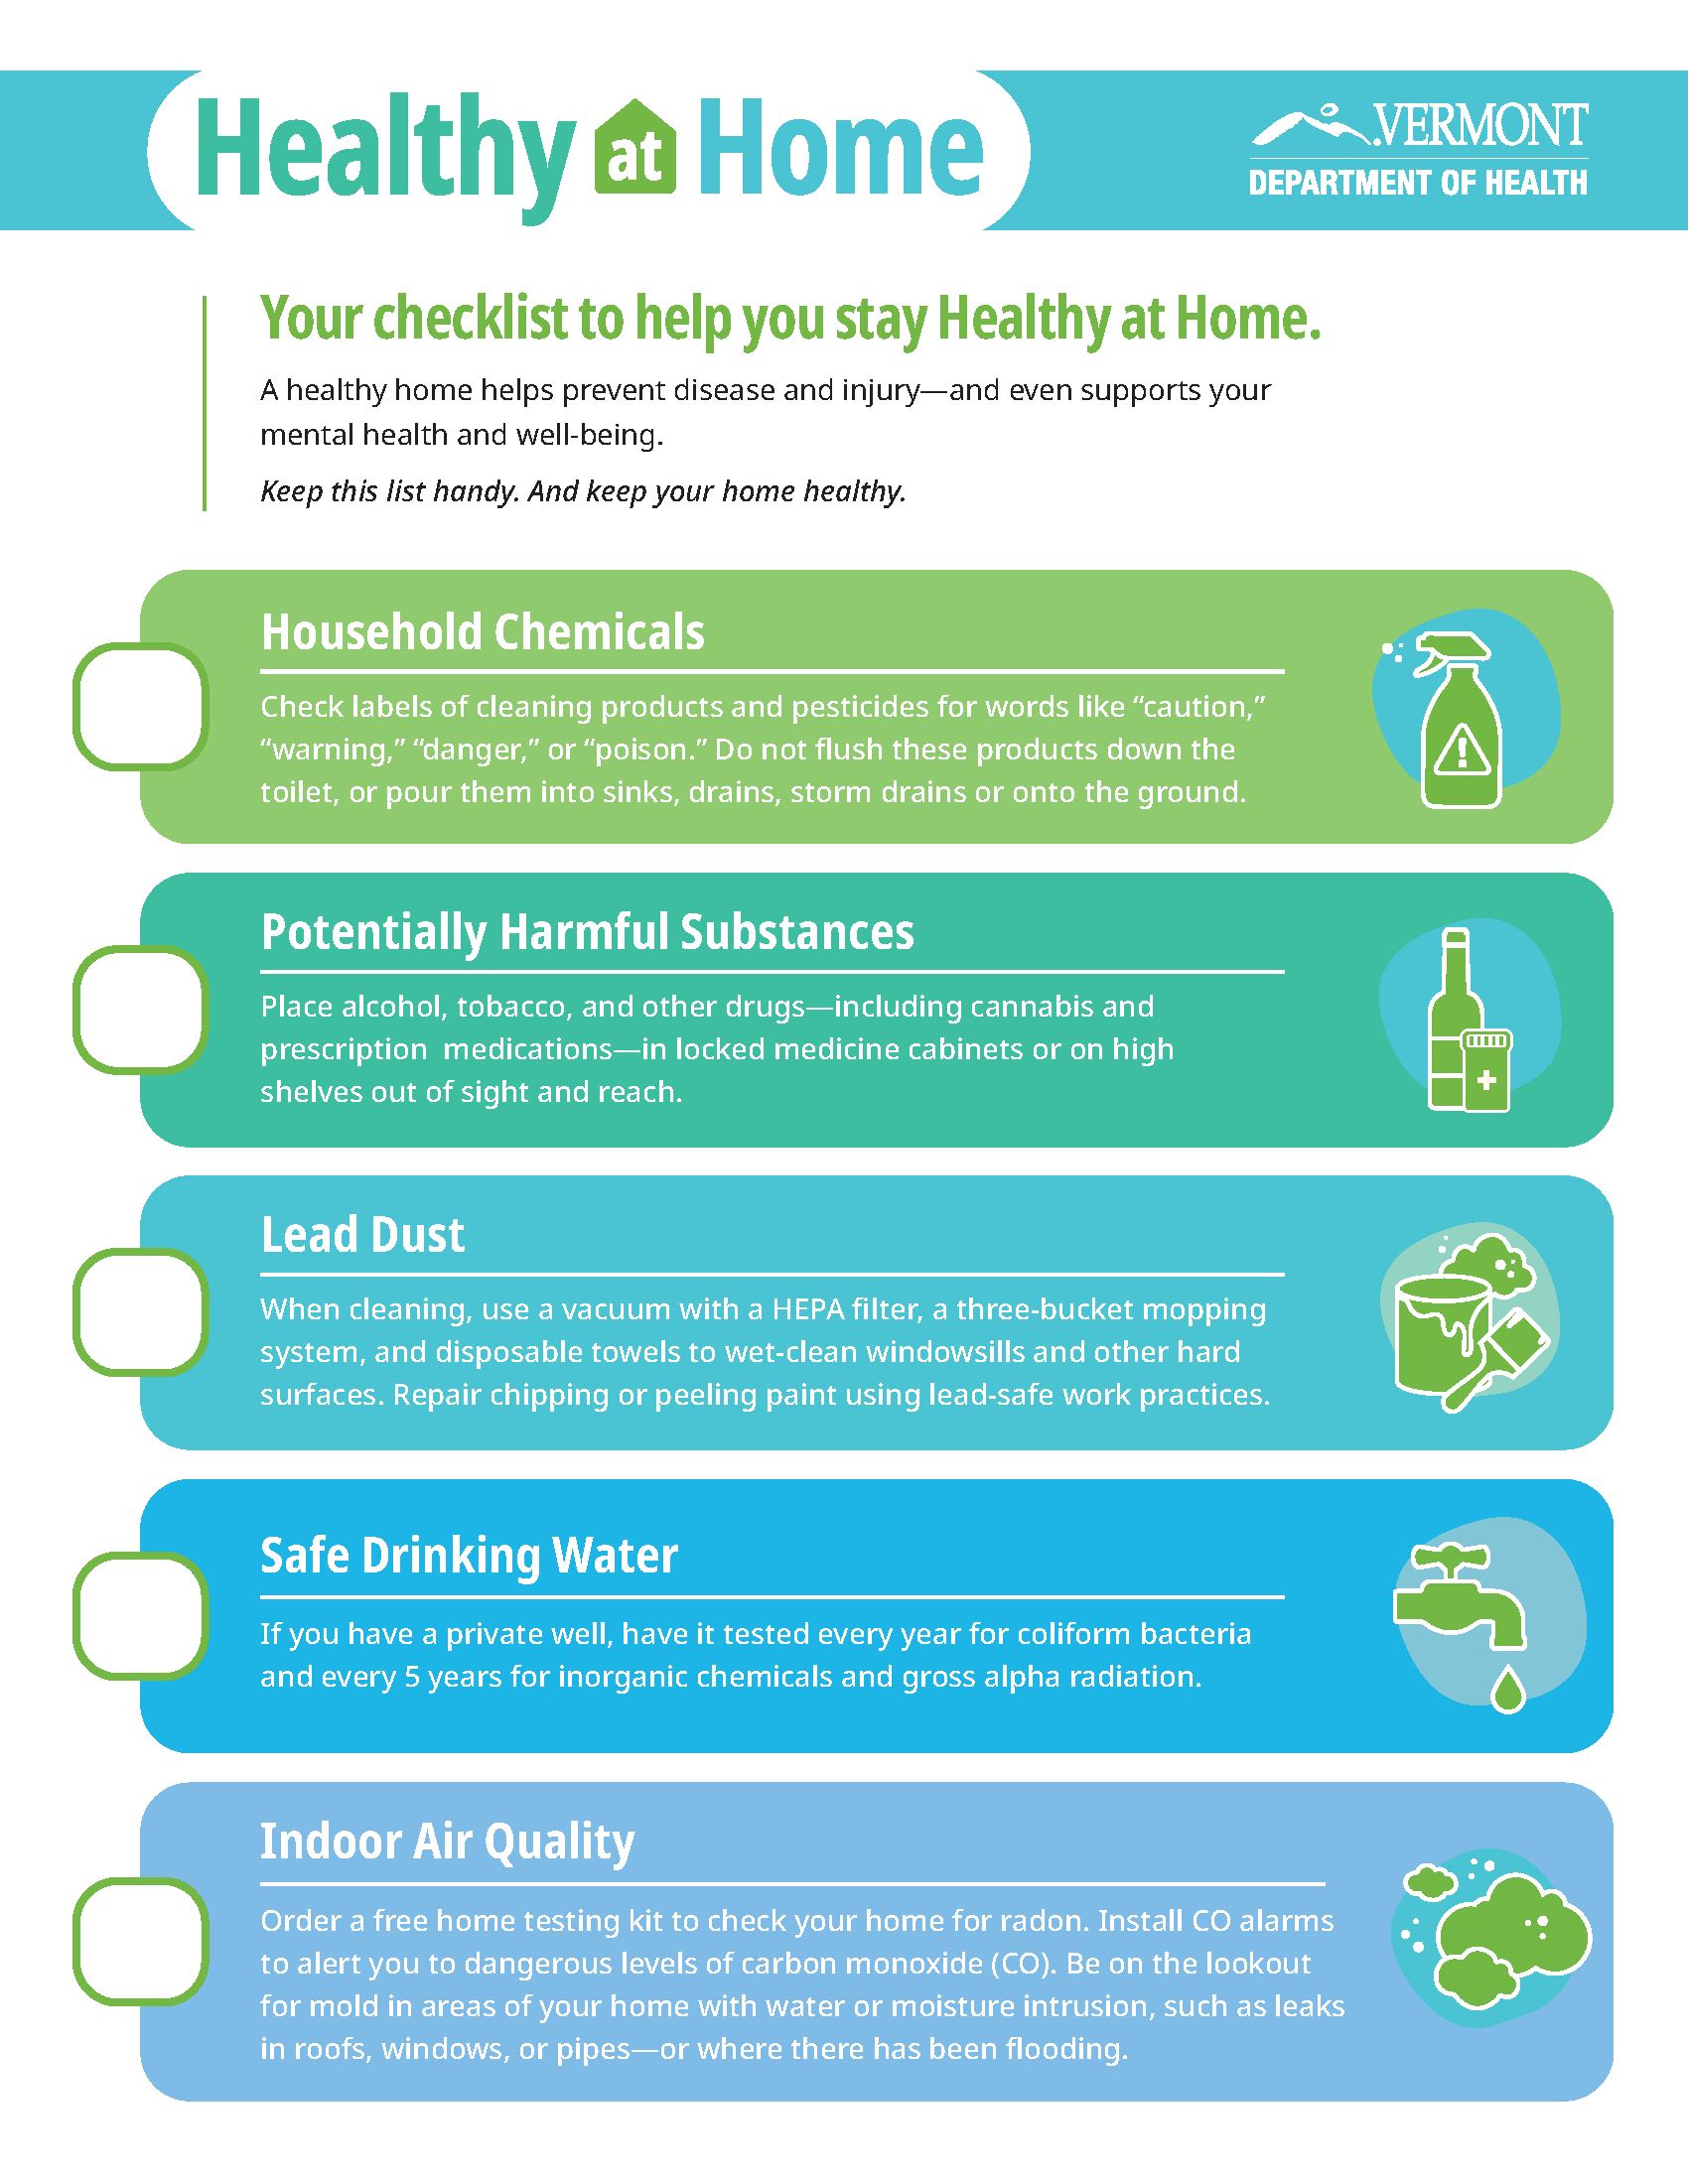 Healthy at Home checklist